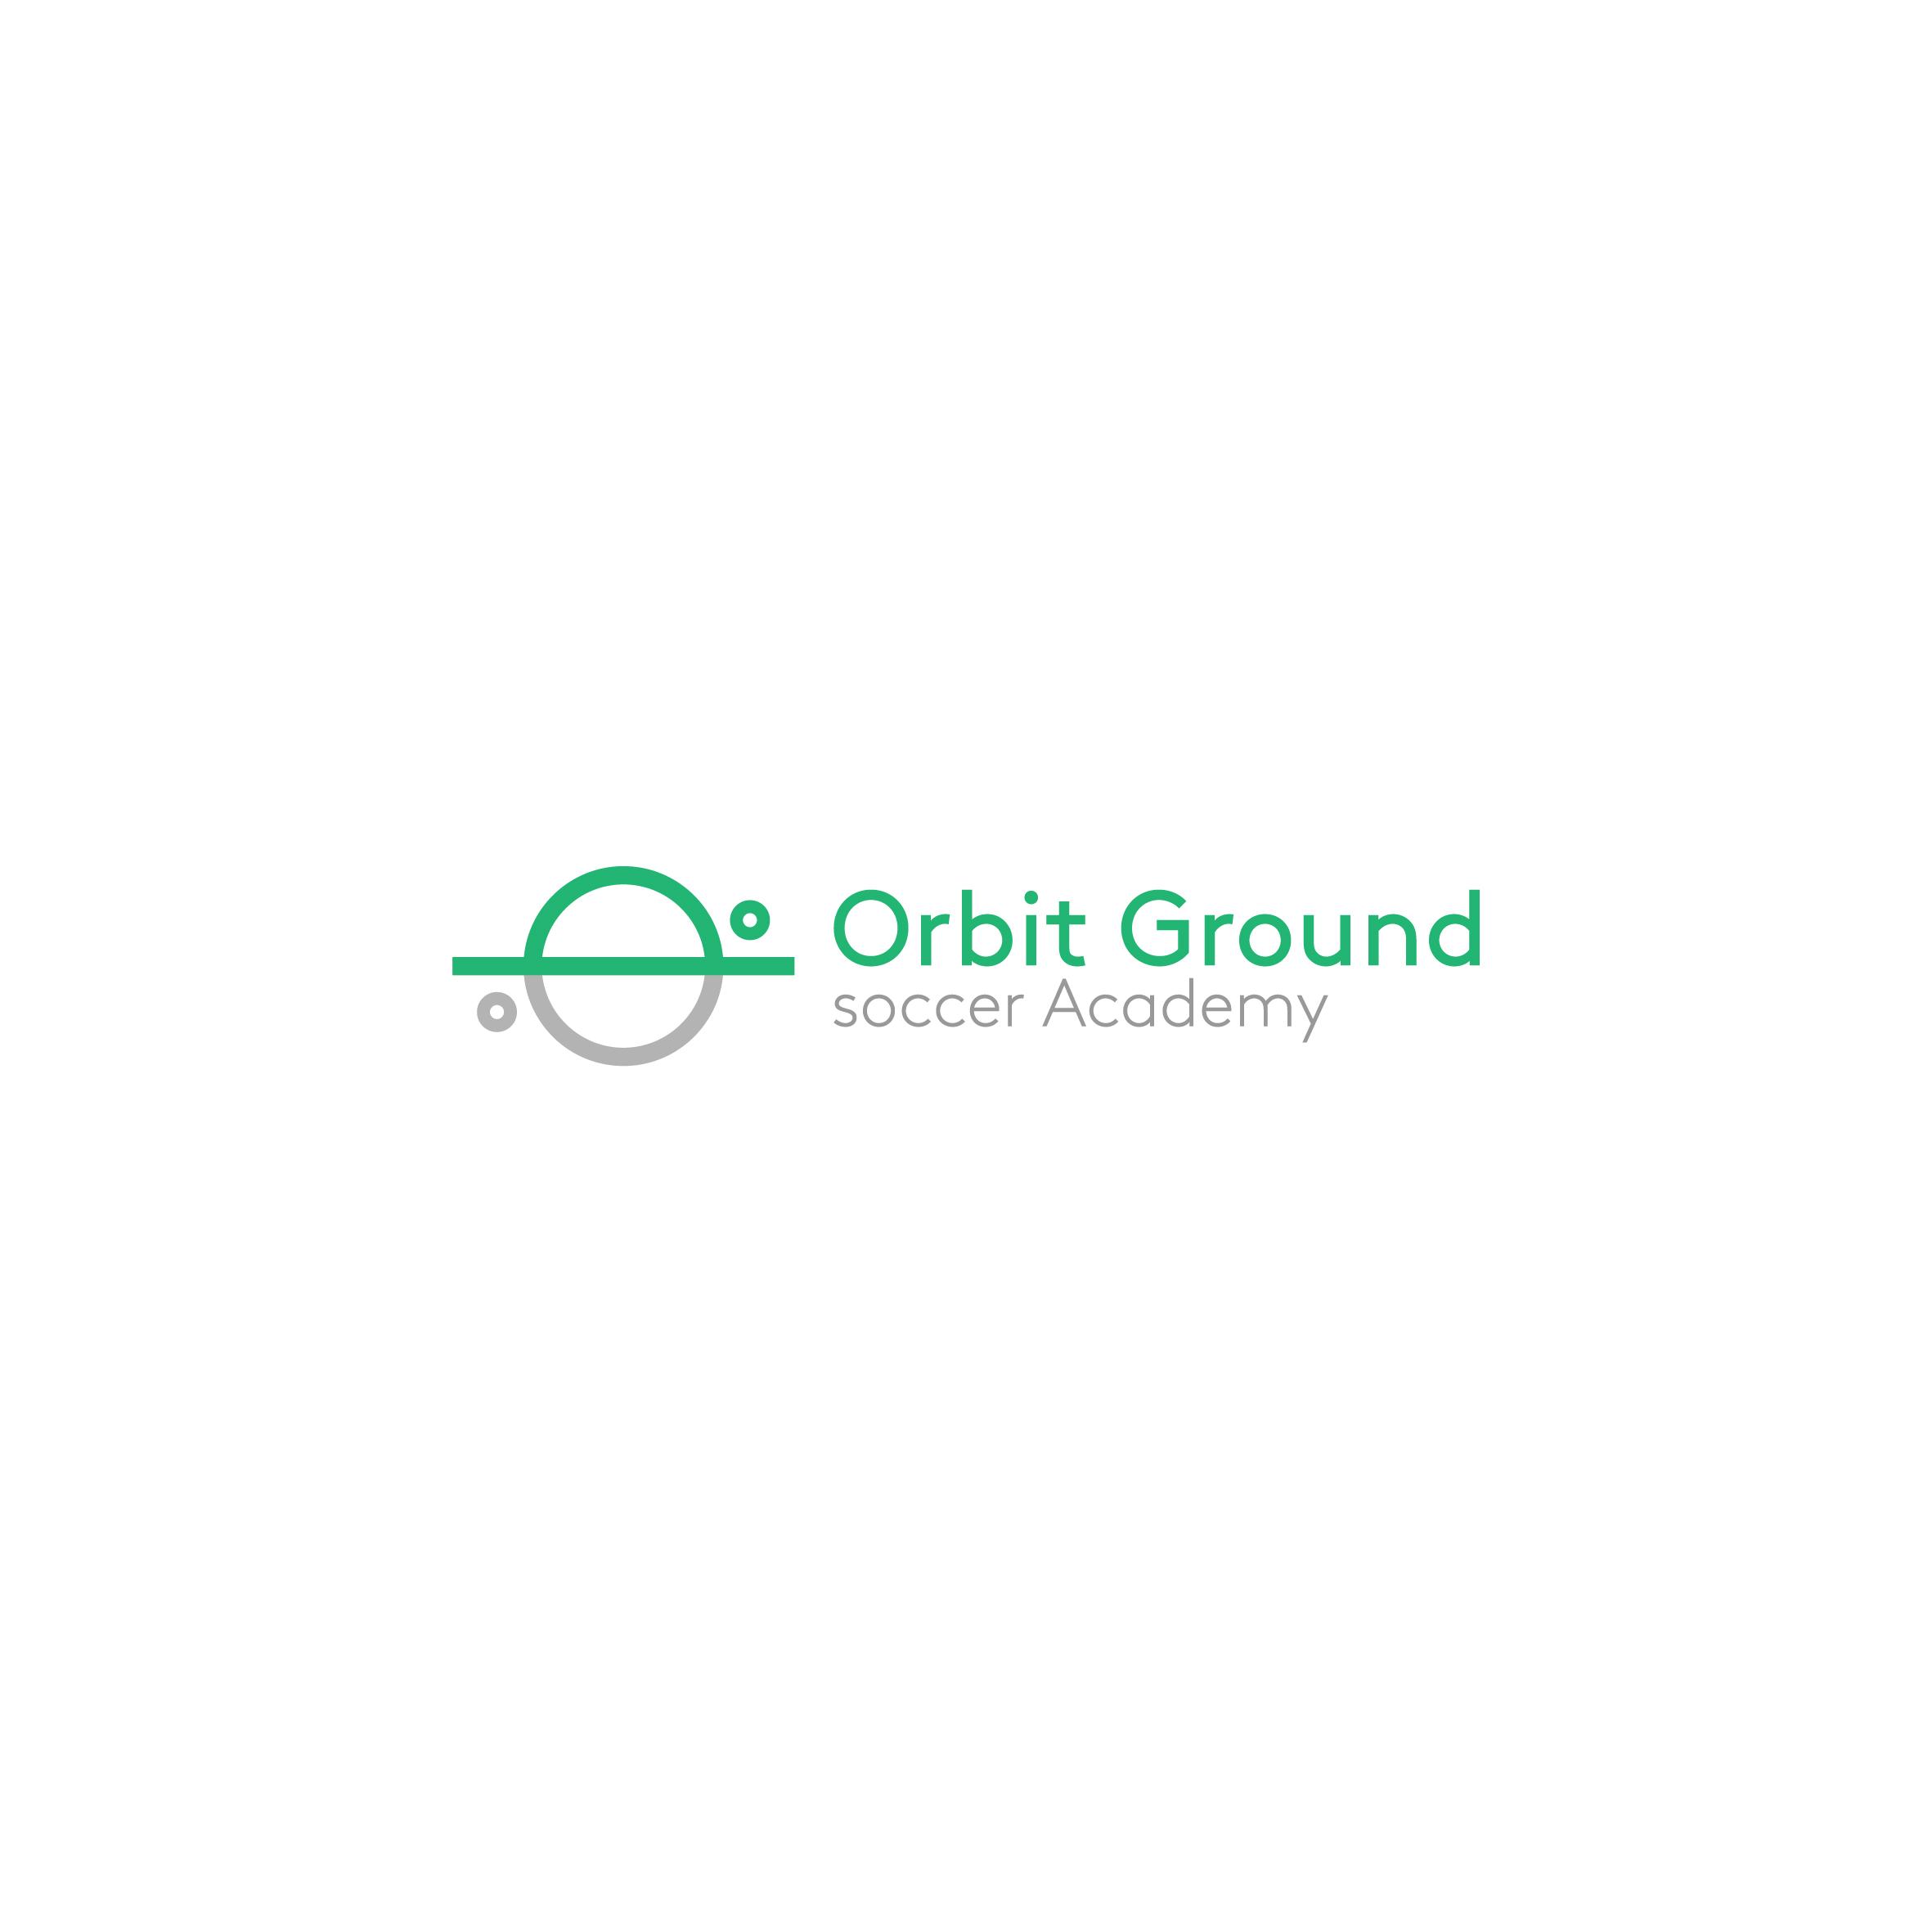 لوگو orbit ground